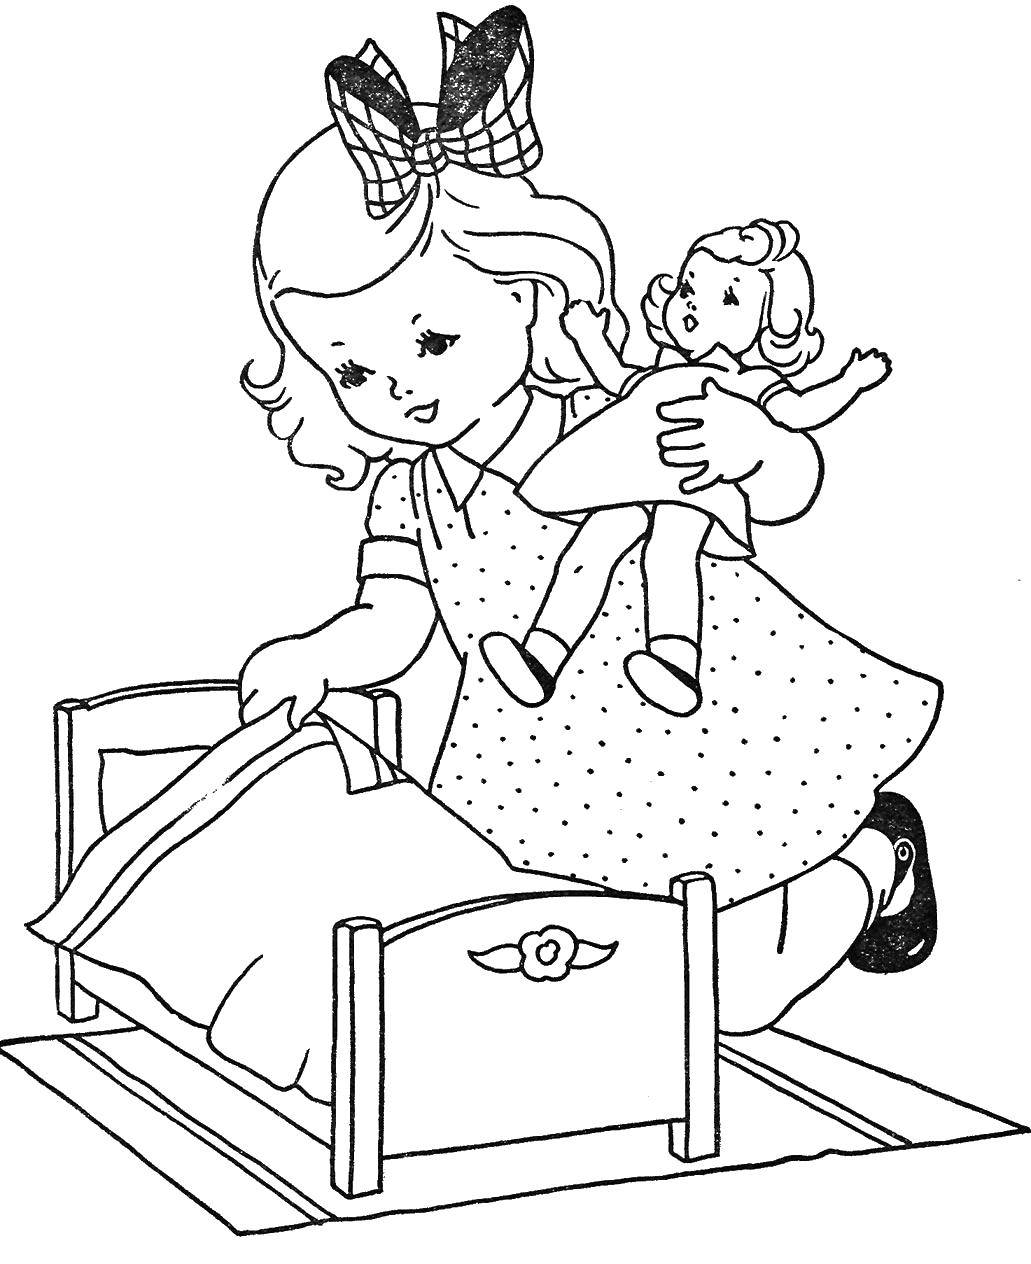 Увлекательные и красочные раскраски на тему игрушек и кукол, одежды и аксессуаров для детей (игрушки, одежда)